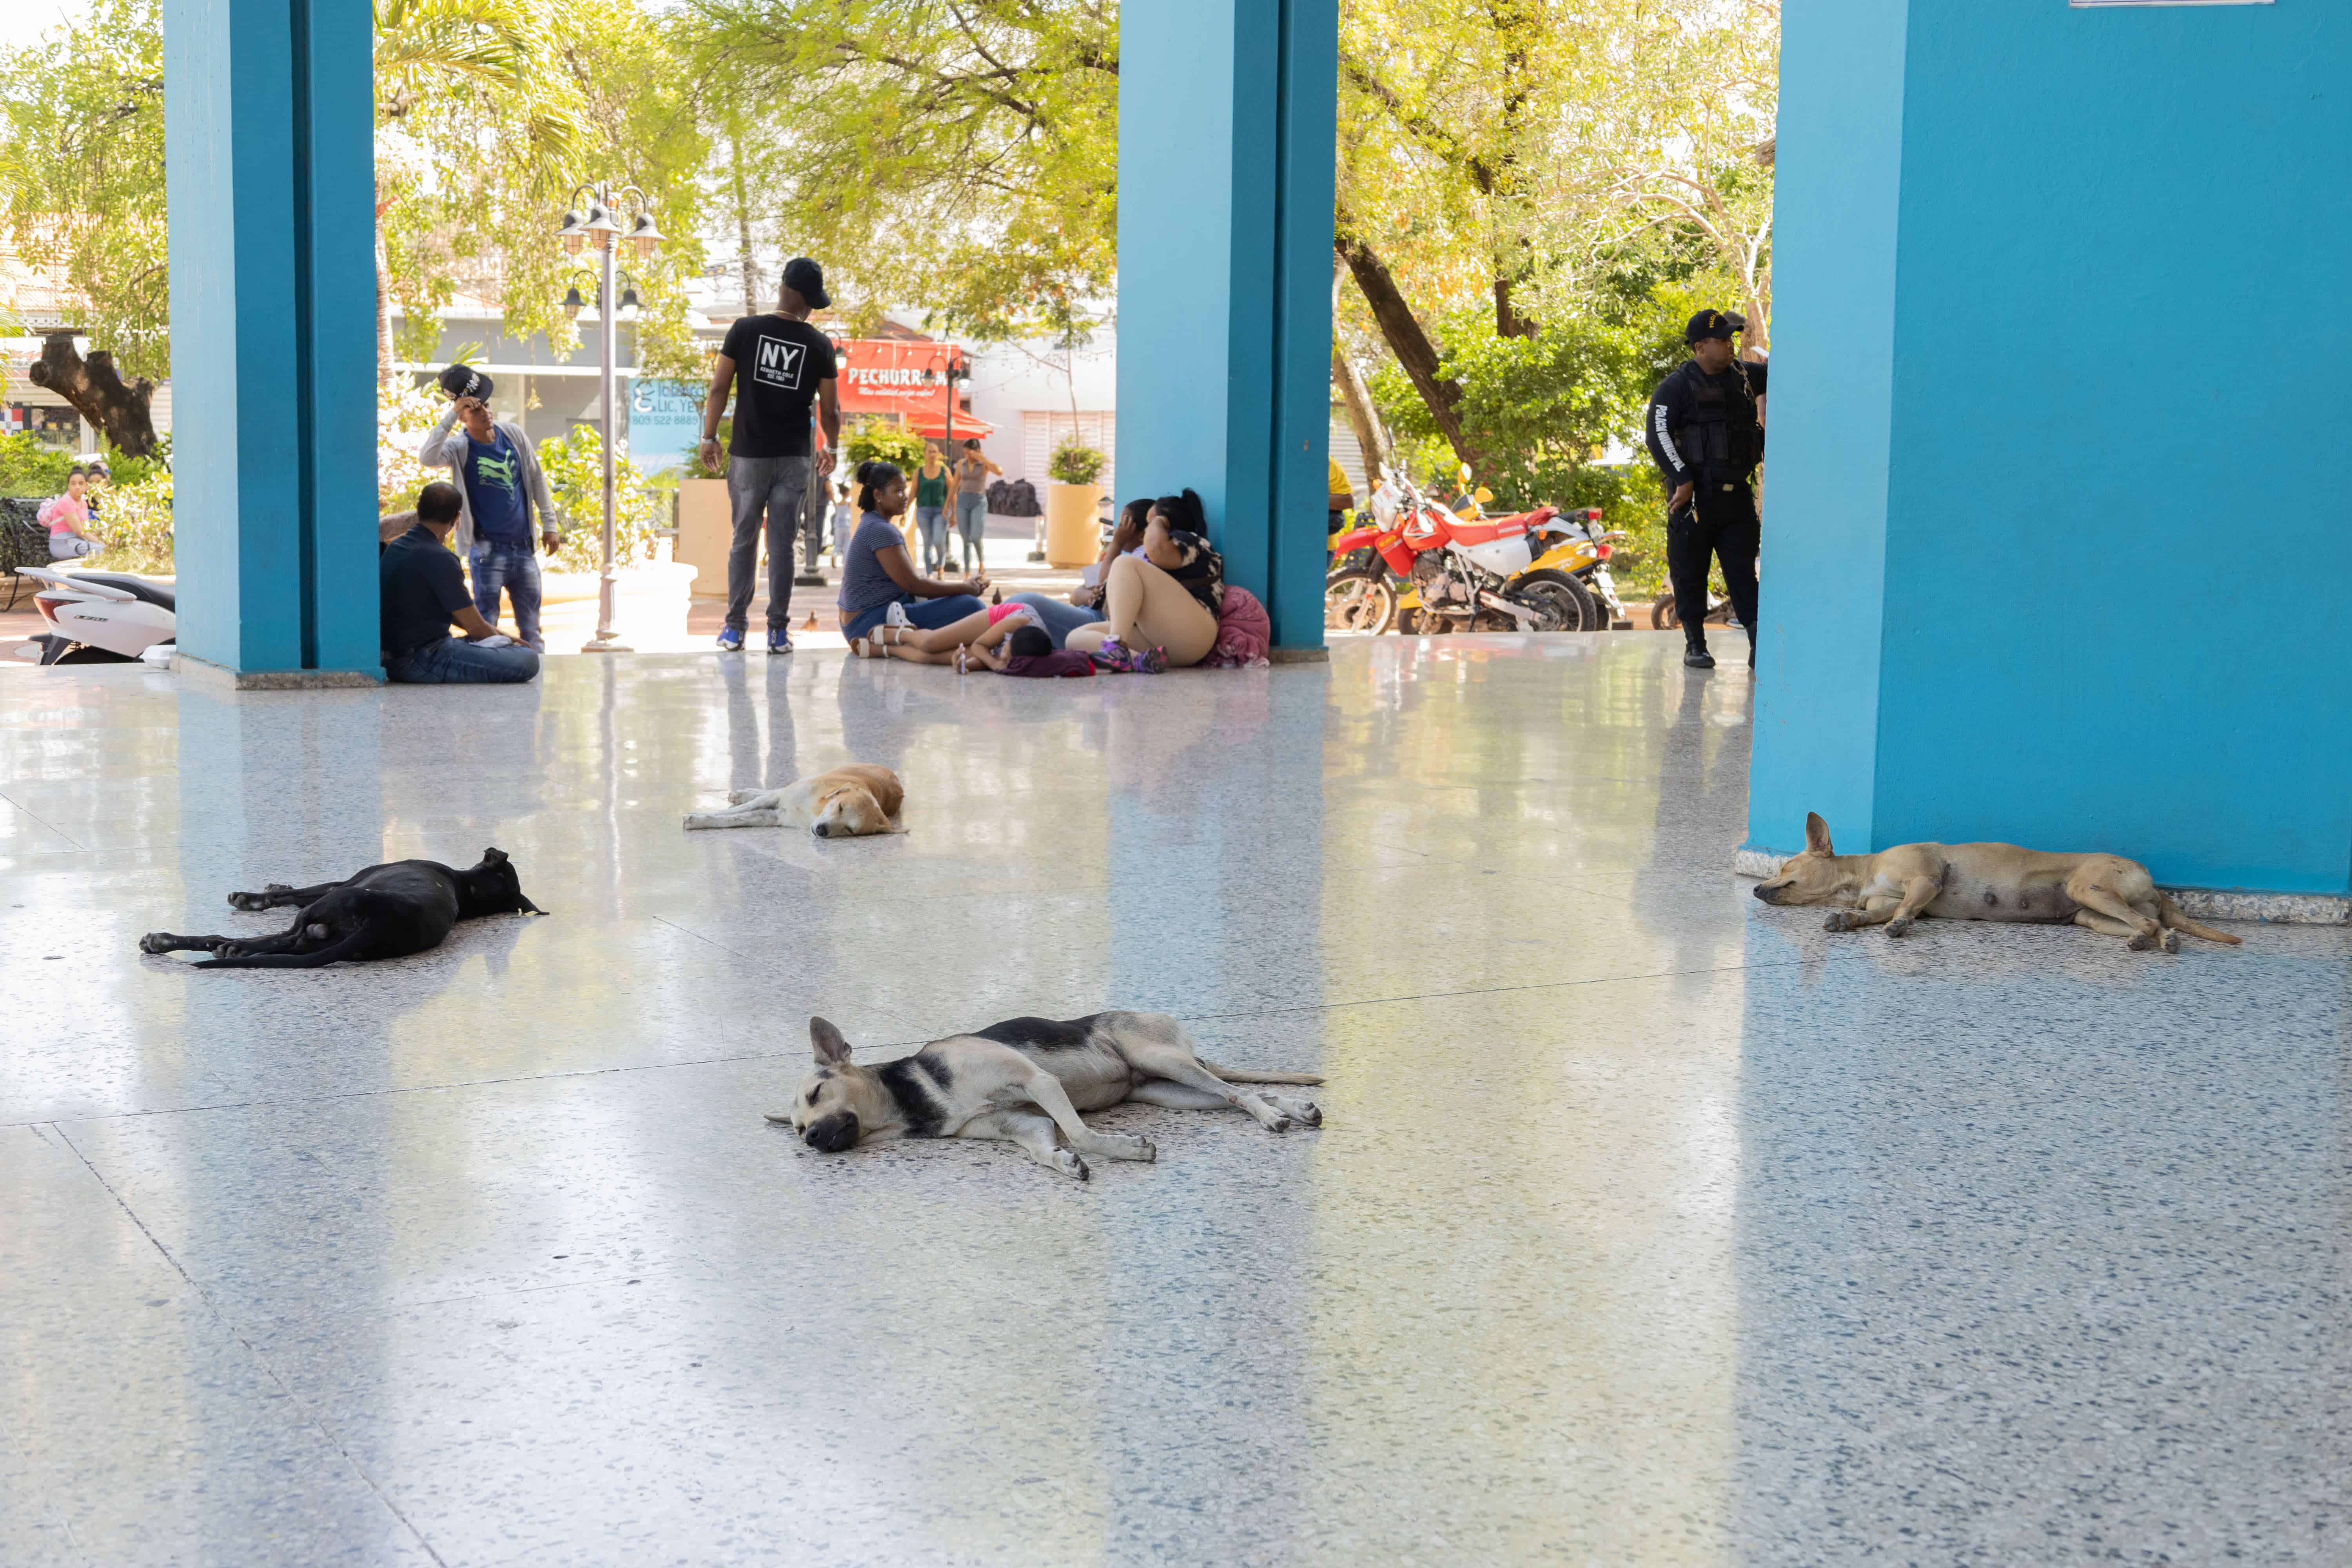 Cuatro perros callejeros se resguardan del intenso calor que reinó durante la jornada electoral en el República Dominicana el 19 de mayo.